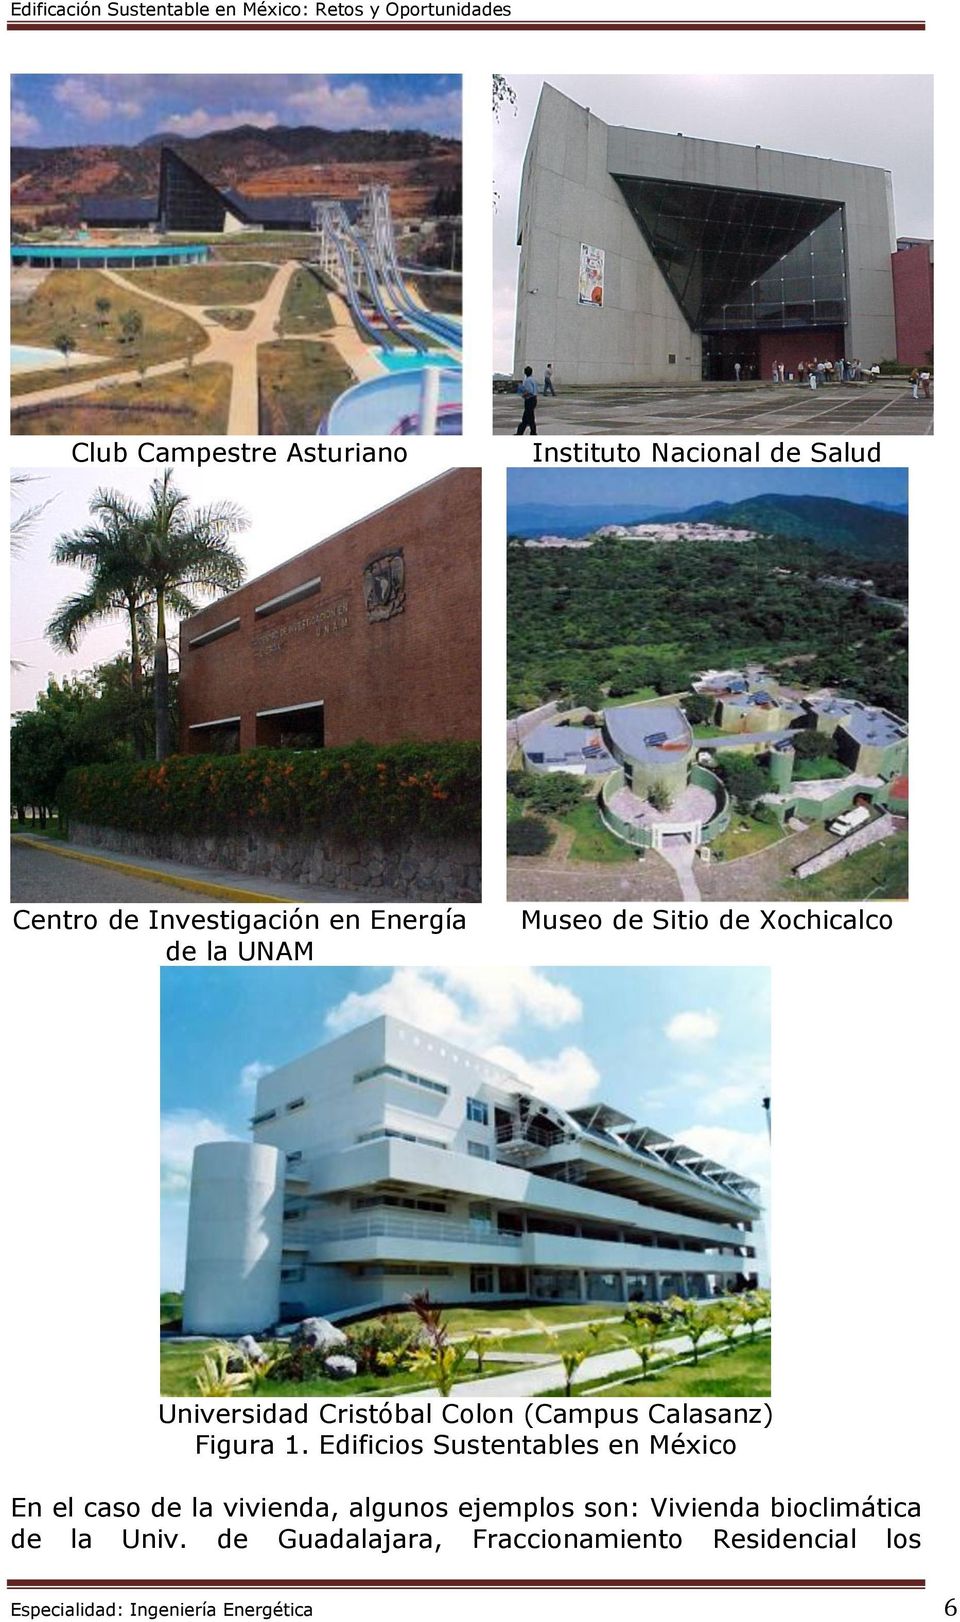 Edificios Sustentables en México En el caso de la vivienda, algunos ejemplos son: Vivienda